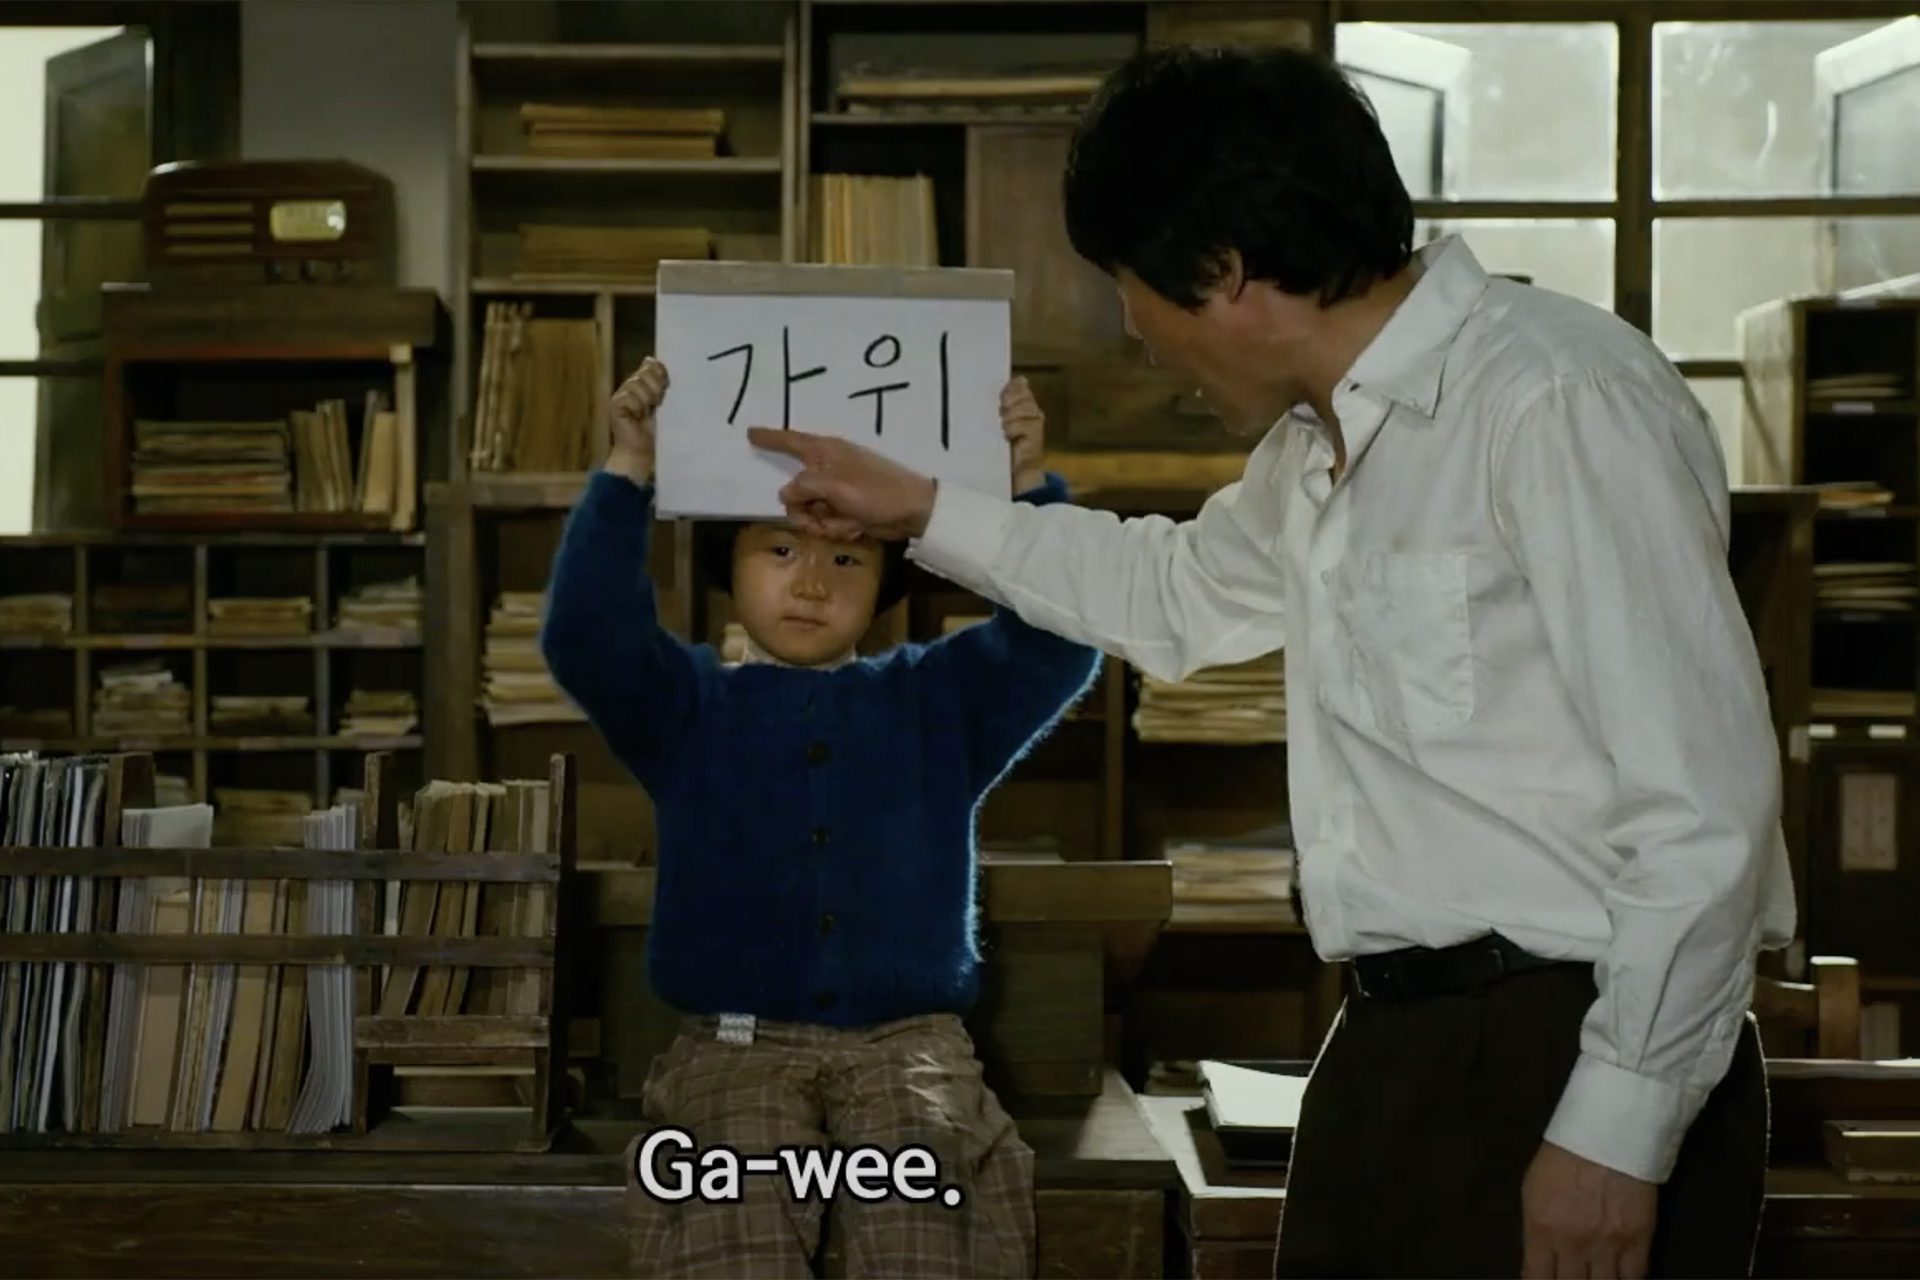 una chica sostiene un cartel en coreano y un hombre lo señala